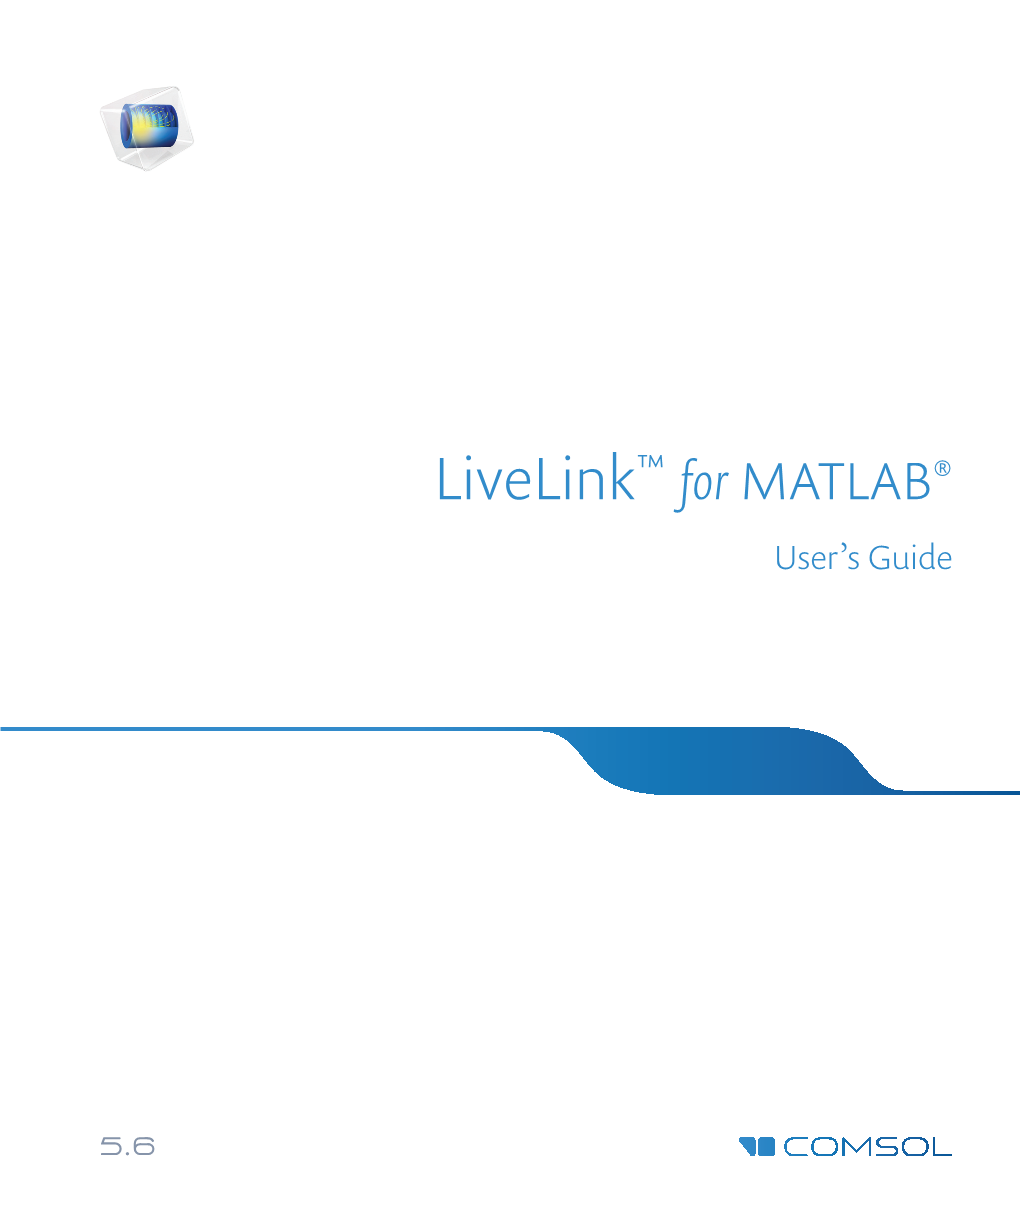 Livelink for MATLAB User's Guide